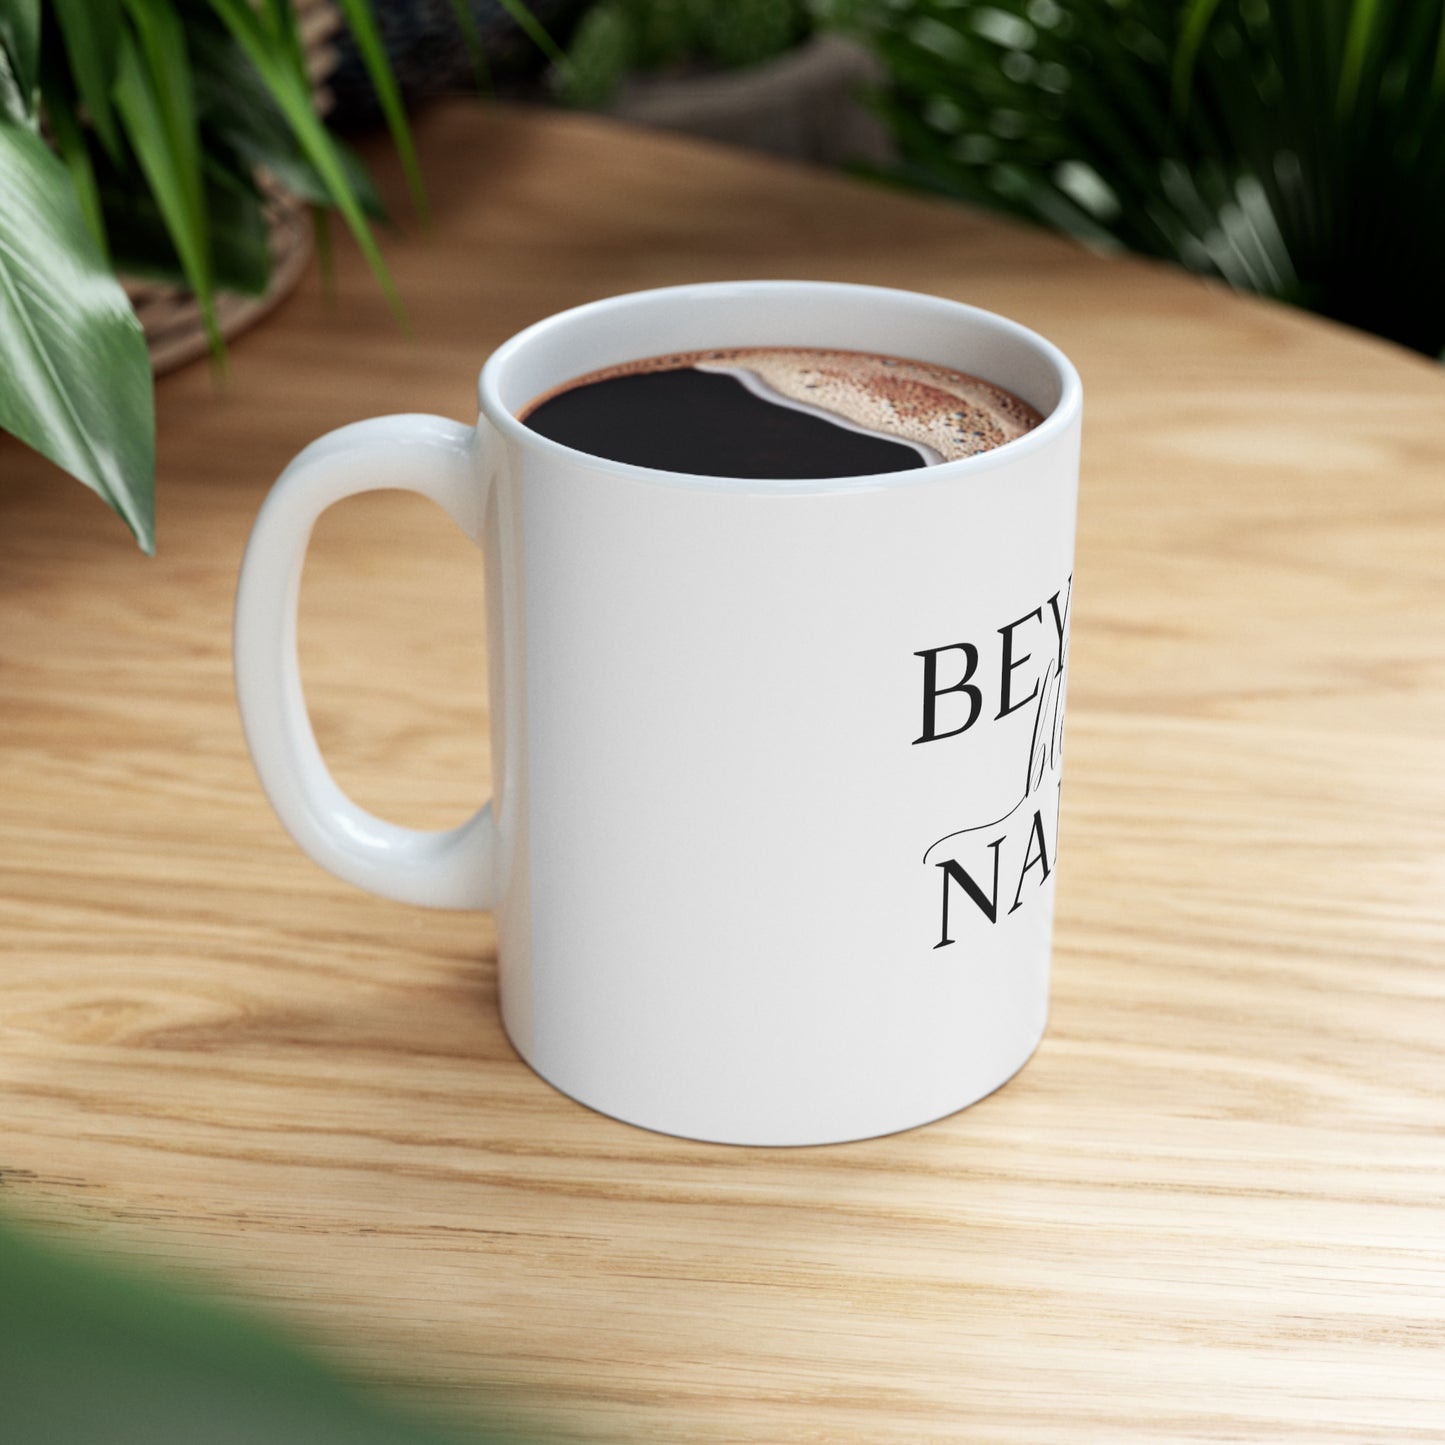 Beyond Blessed Nanny - Plain Ceramic Mug 11oz